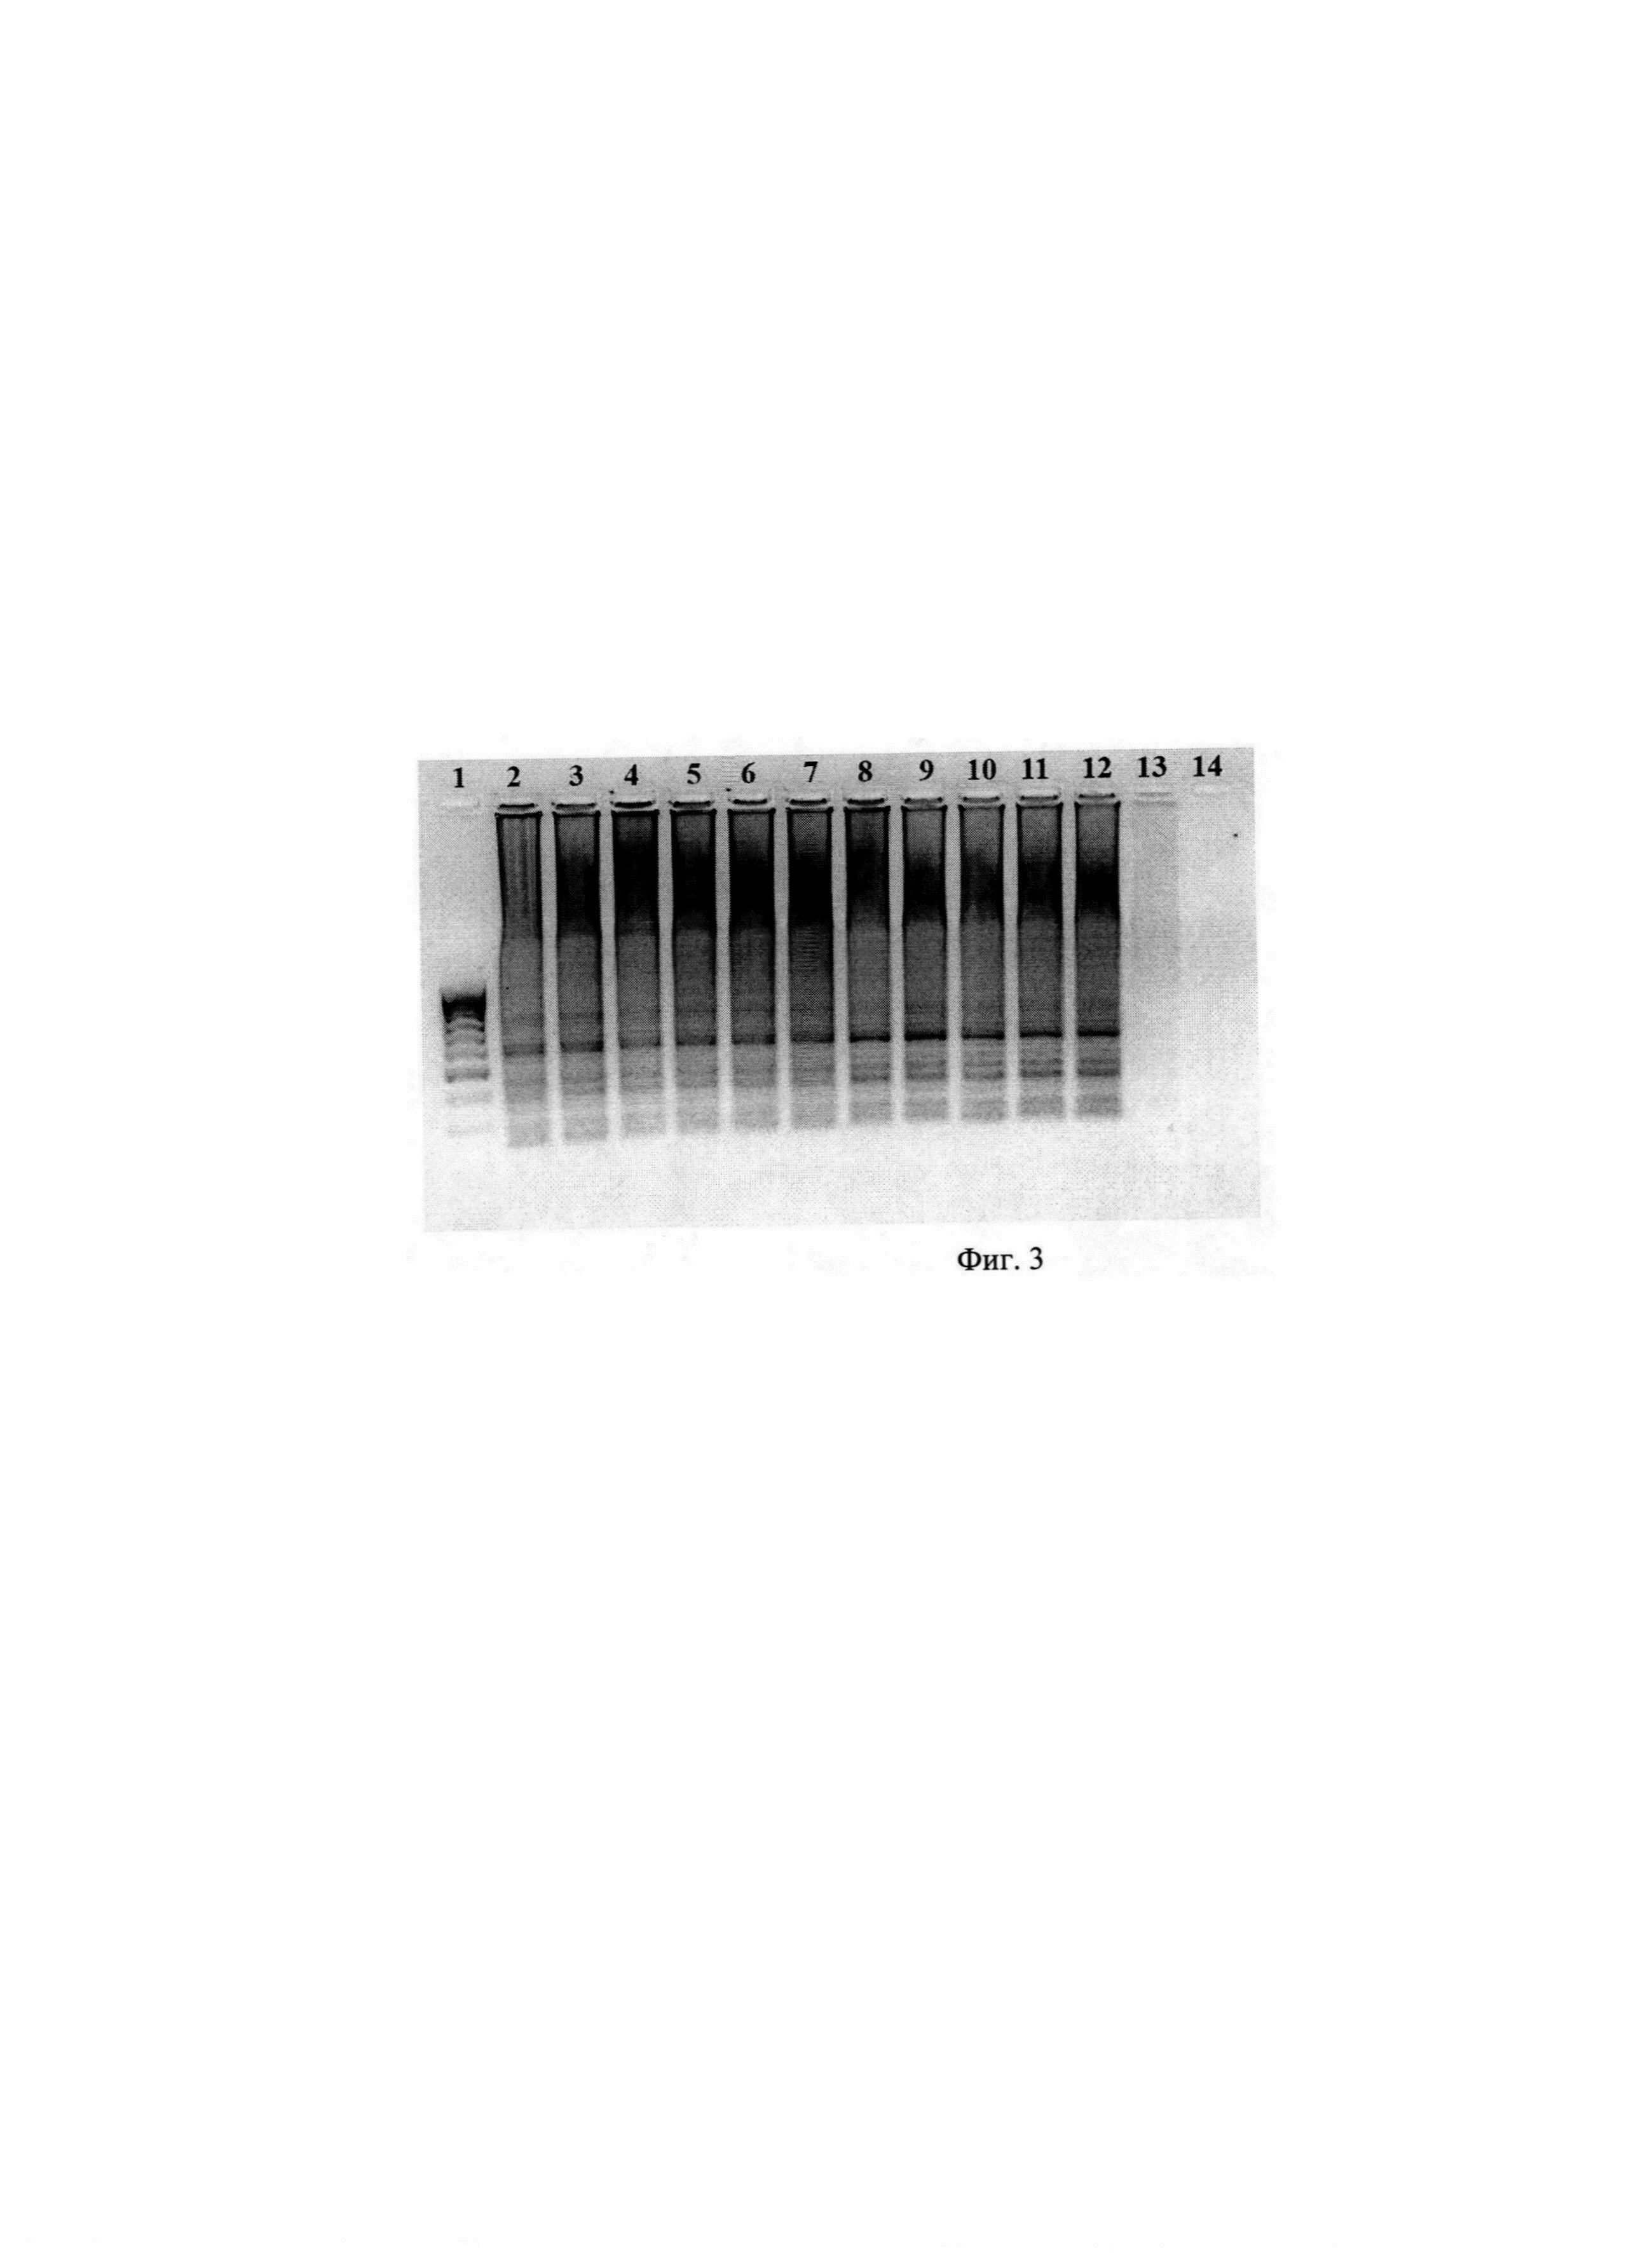 Набор олигонуклеотидных праймеров Ft 40 и способ определения бактерий Francisella tularensis (Варианты)